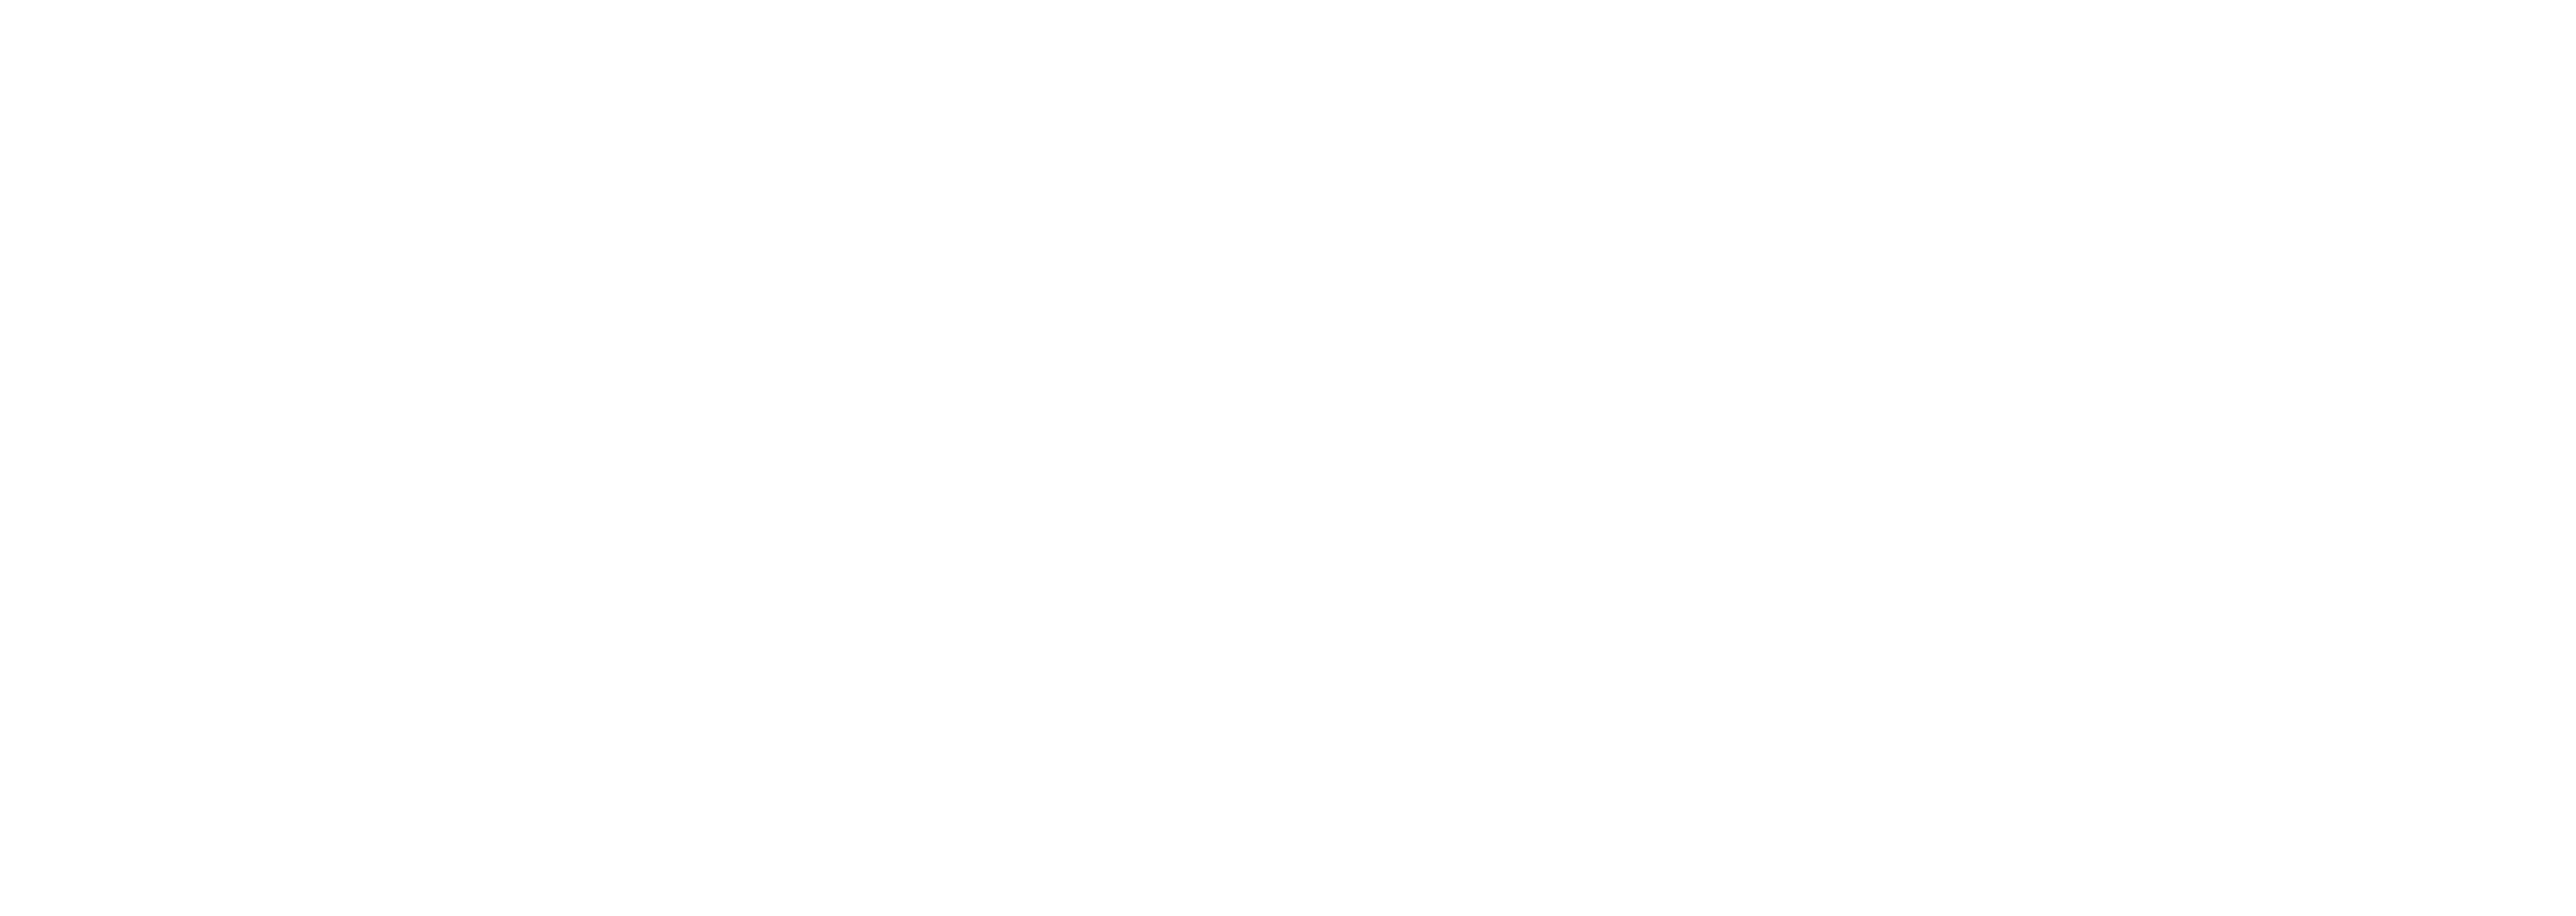 EX-7000